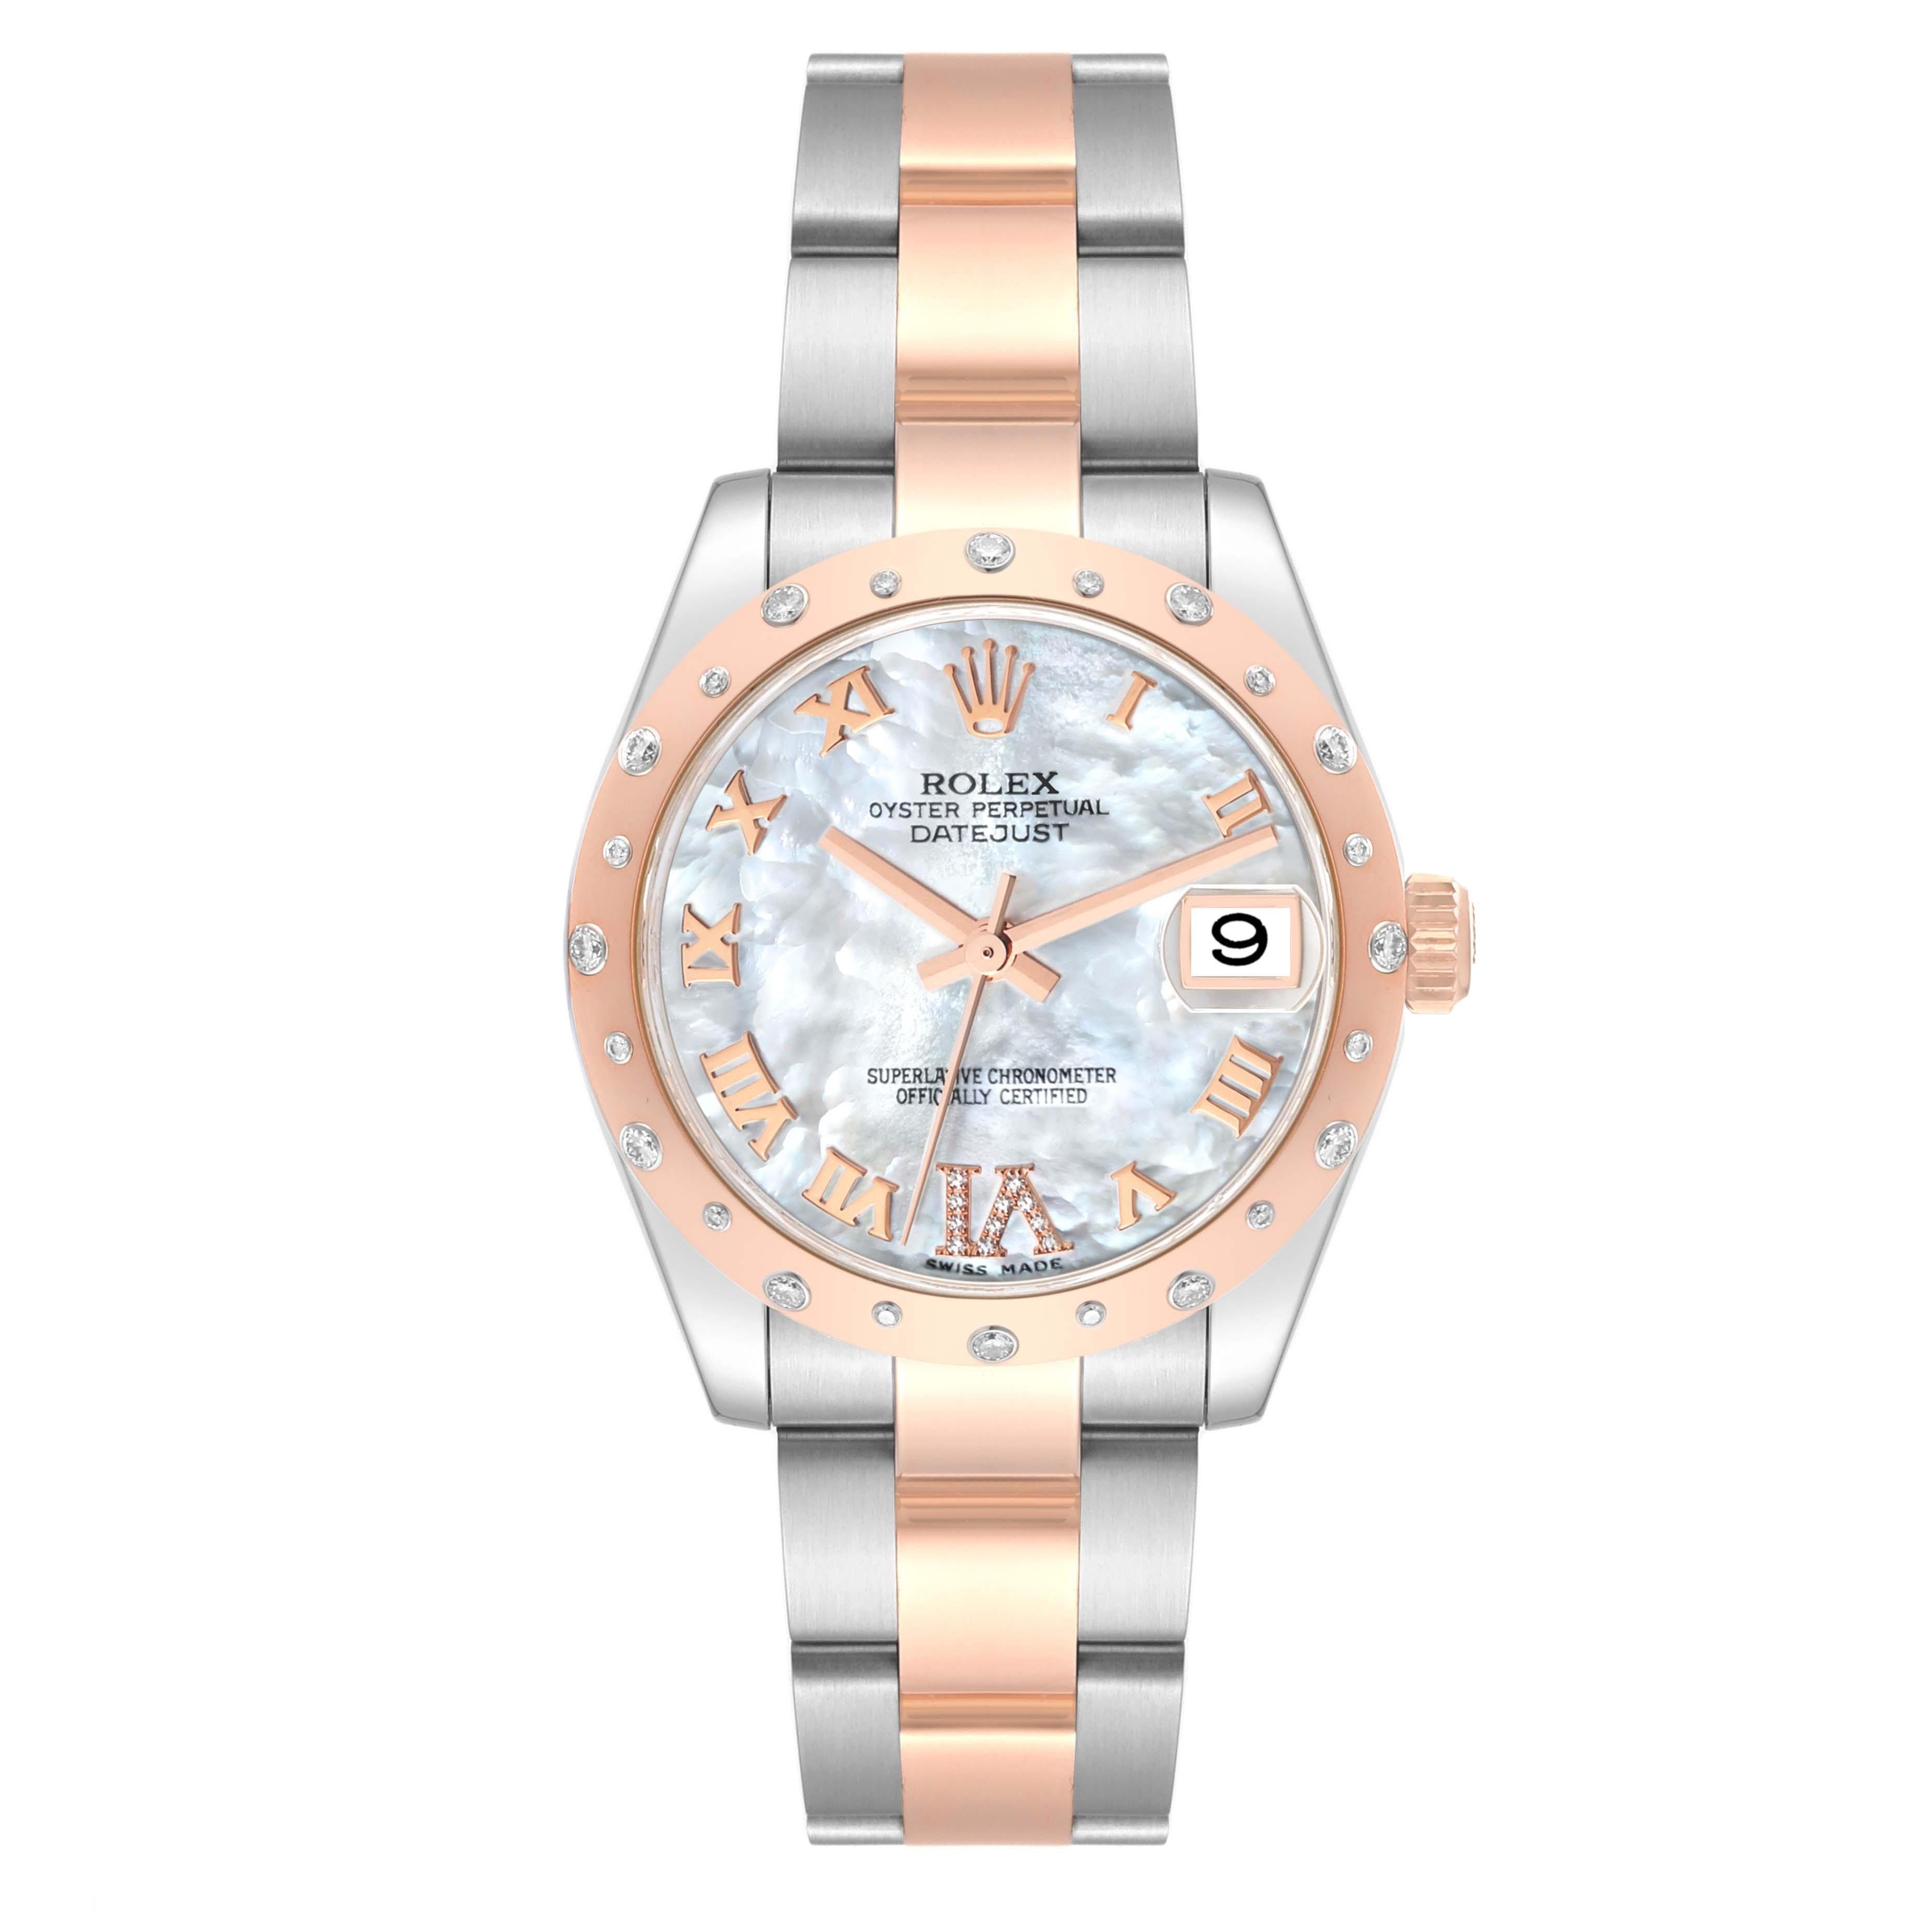 Rolex Datejust 31 Midsize Steel Rose Gold Mother Of Pearl Diamond Ladies Watch 178341. Mouvement à remontage automatique certifié officiellement chronomètre. Boîtier en acier inoxydable et en or rose 18 carats de 31 mm de diamètre. Logo Rolex sur